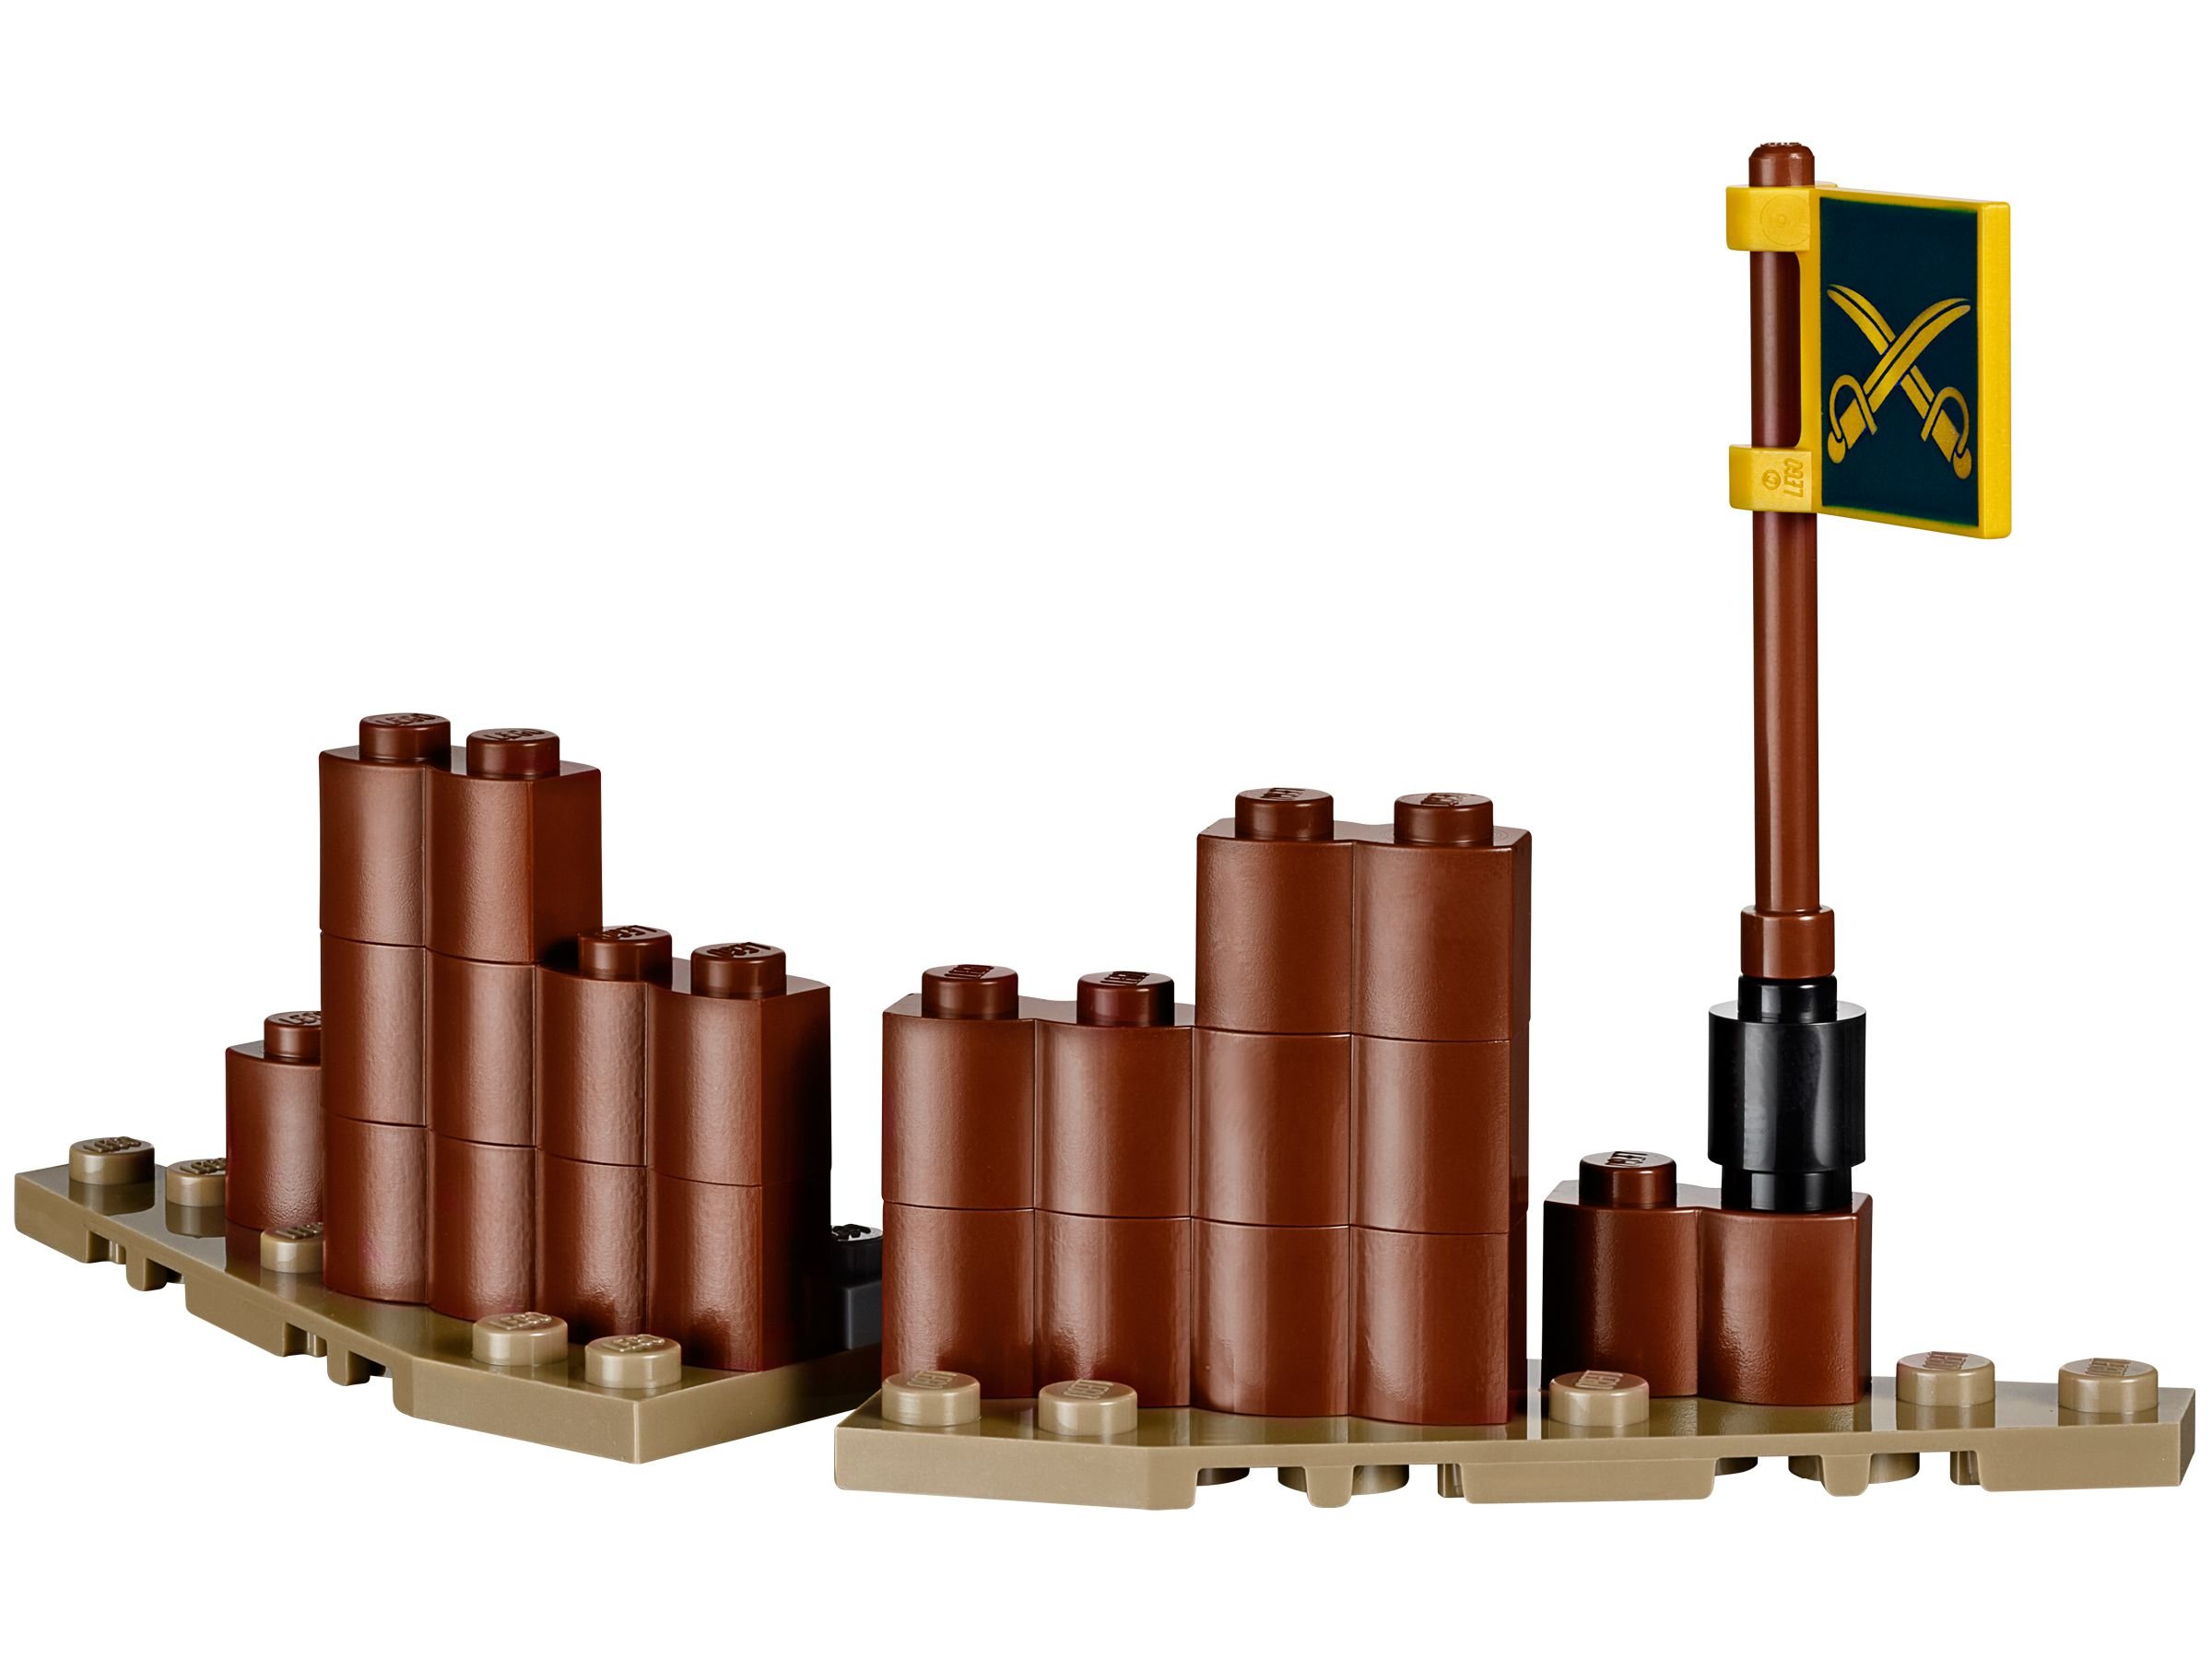 LEGO Lone Ranger 79106 Kavallerie Set LEGO_79106_alt2.jpg